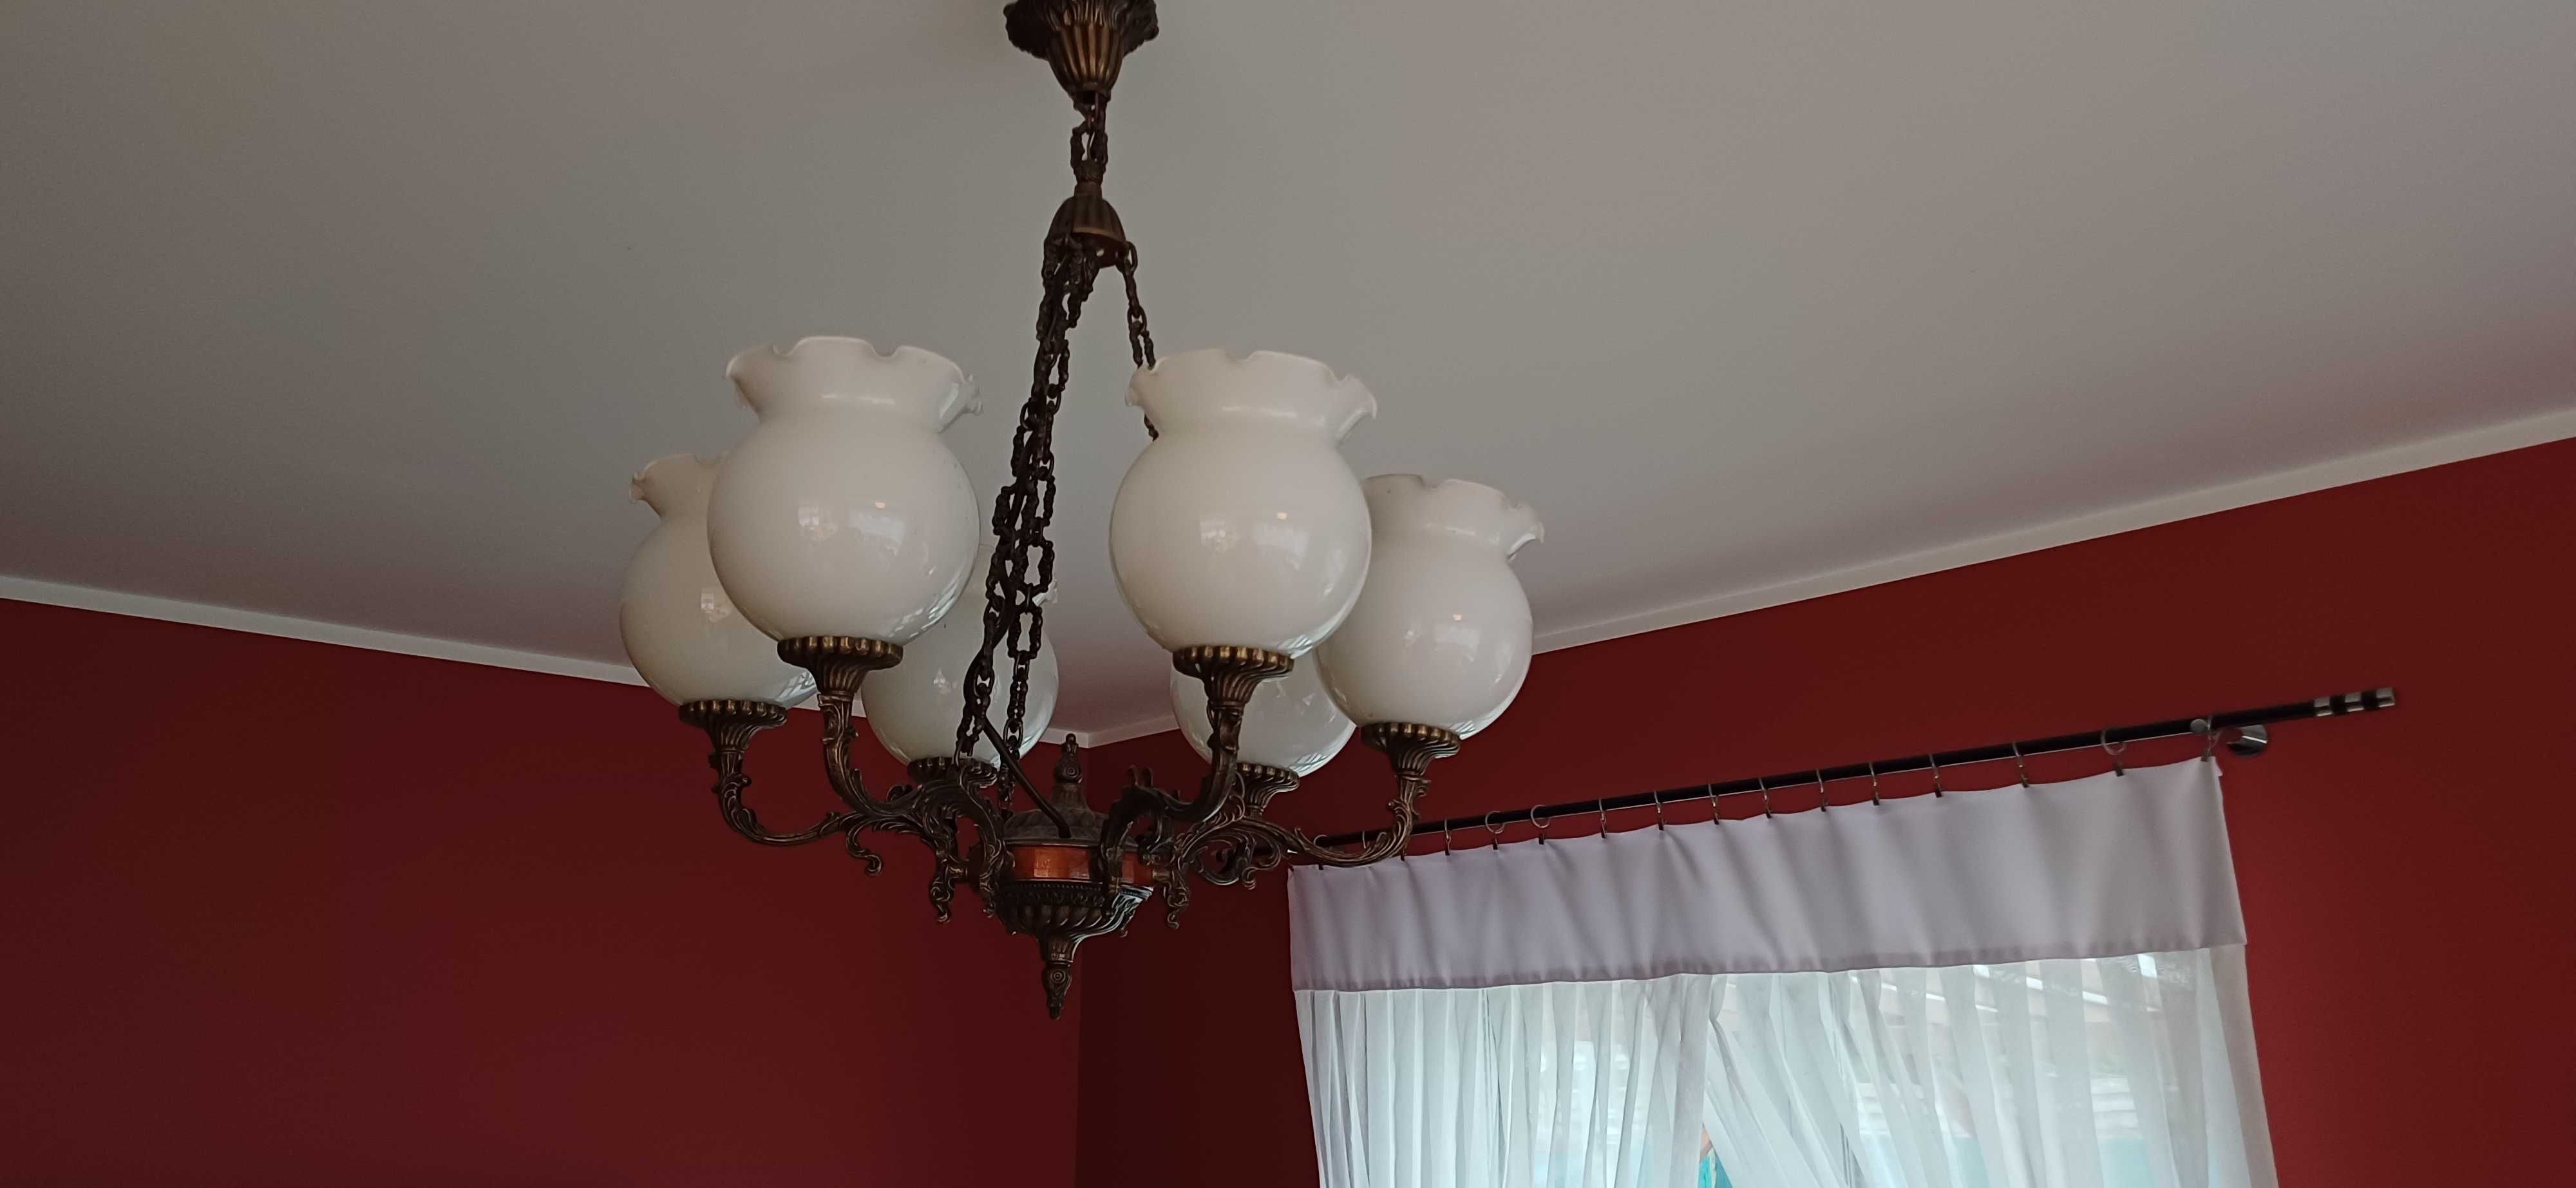 Żyrandol żeliwny 6 lamp sprawny -bardzo ładny lata 50-60.